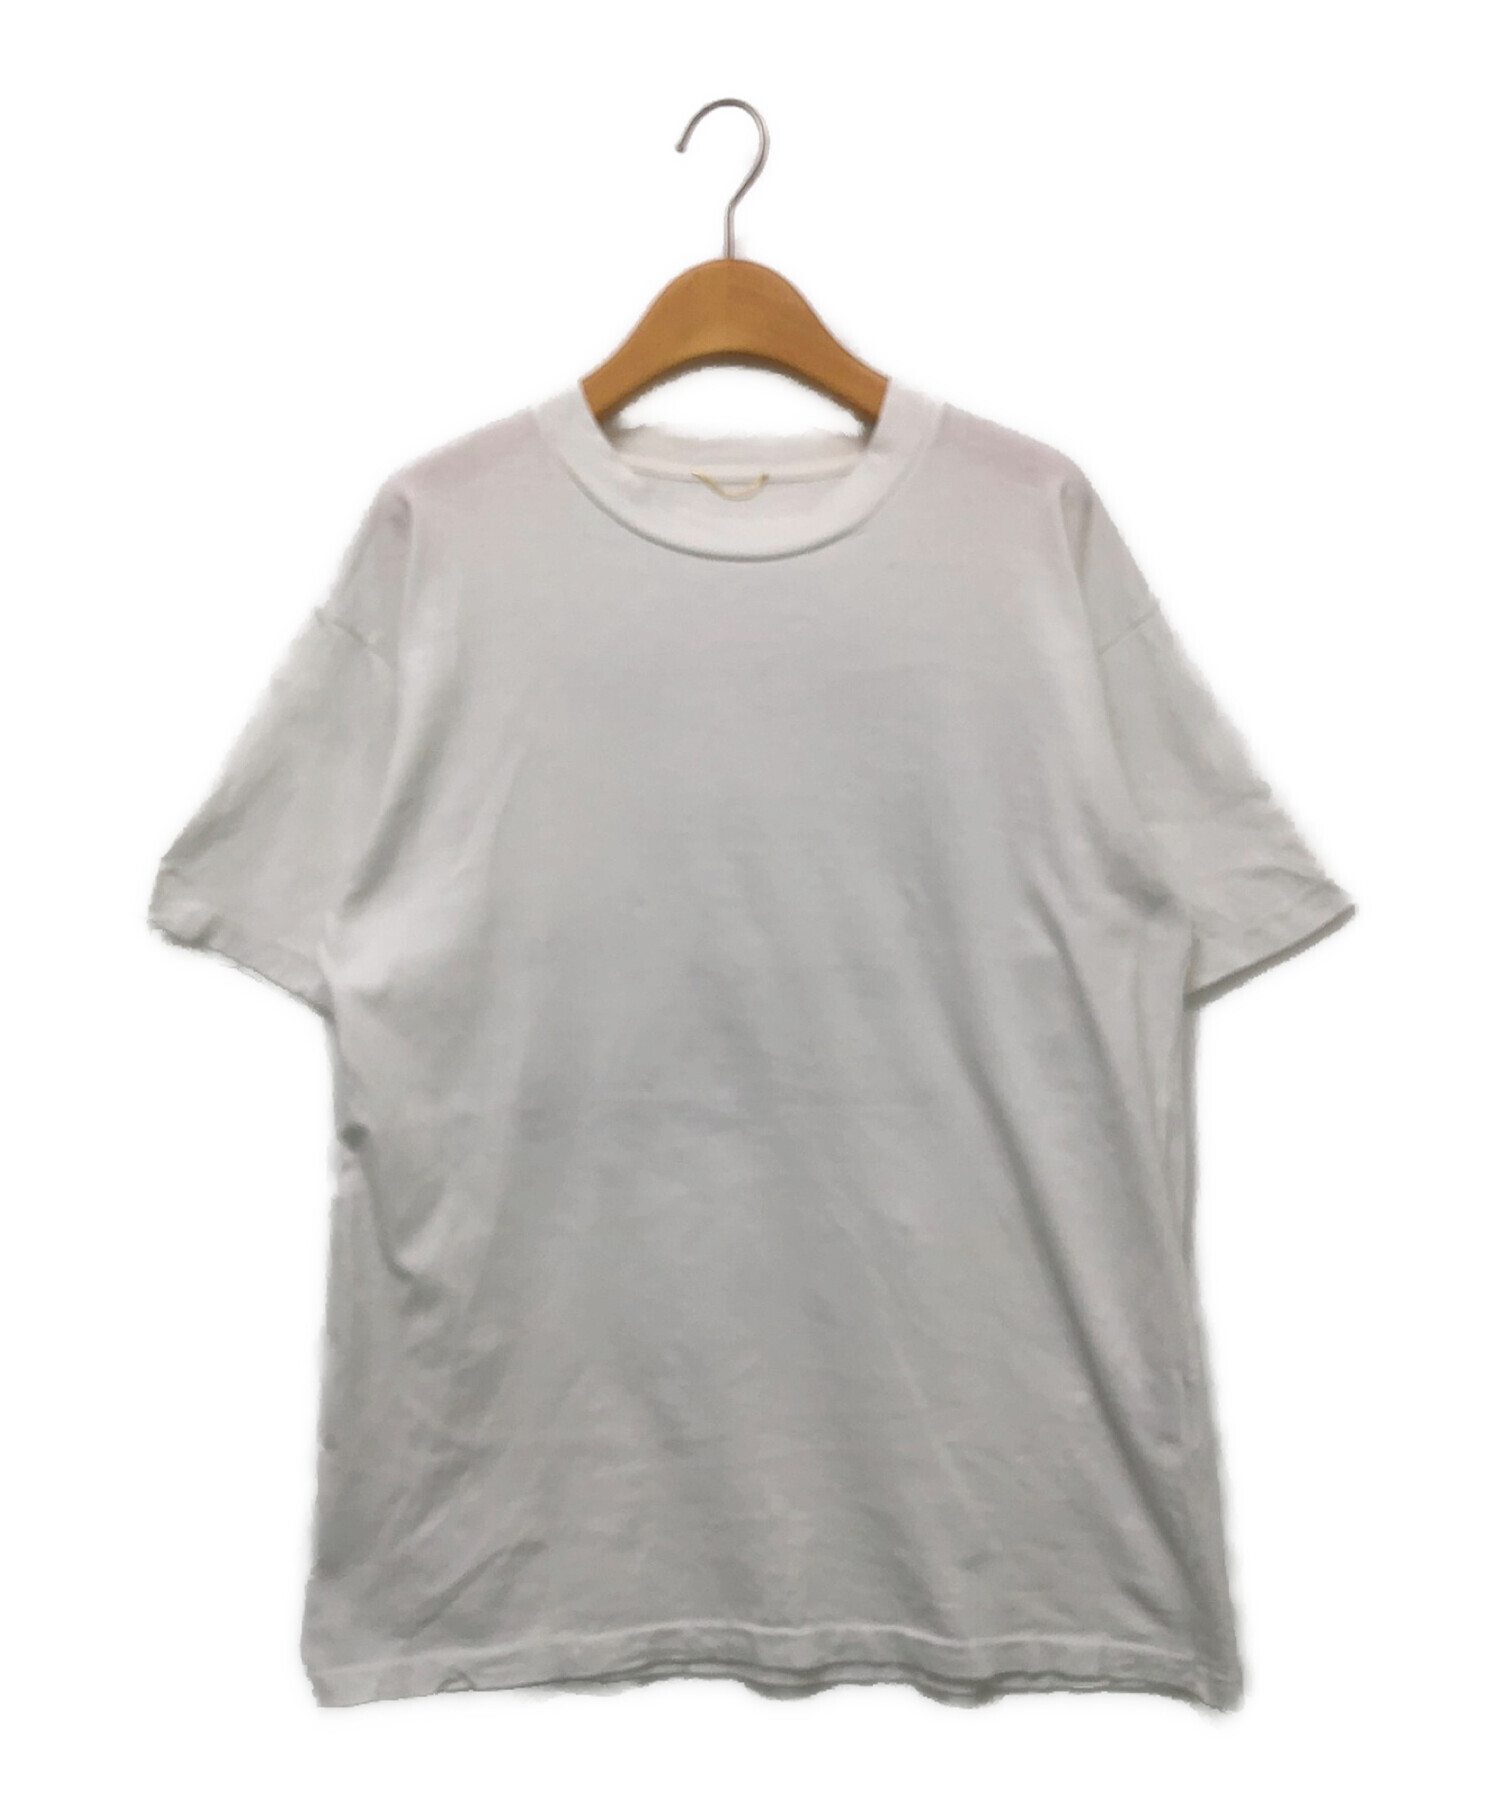 新品☆Deuxieme Classe☆ Hind Print Tシャツ☆ホワイト